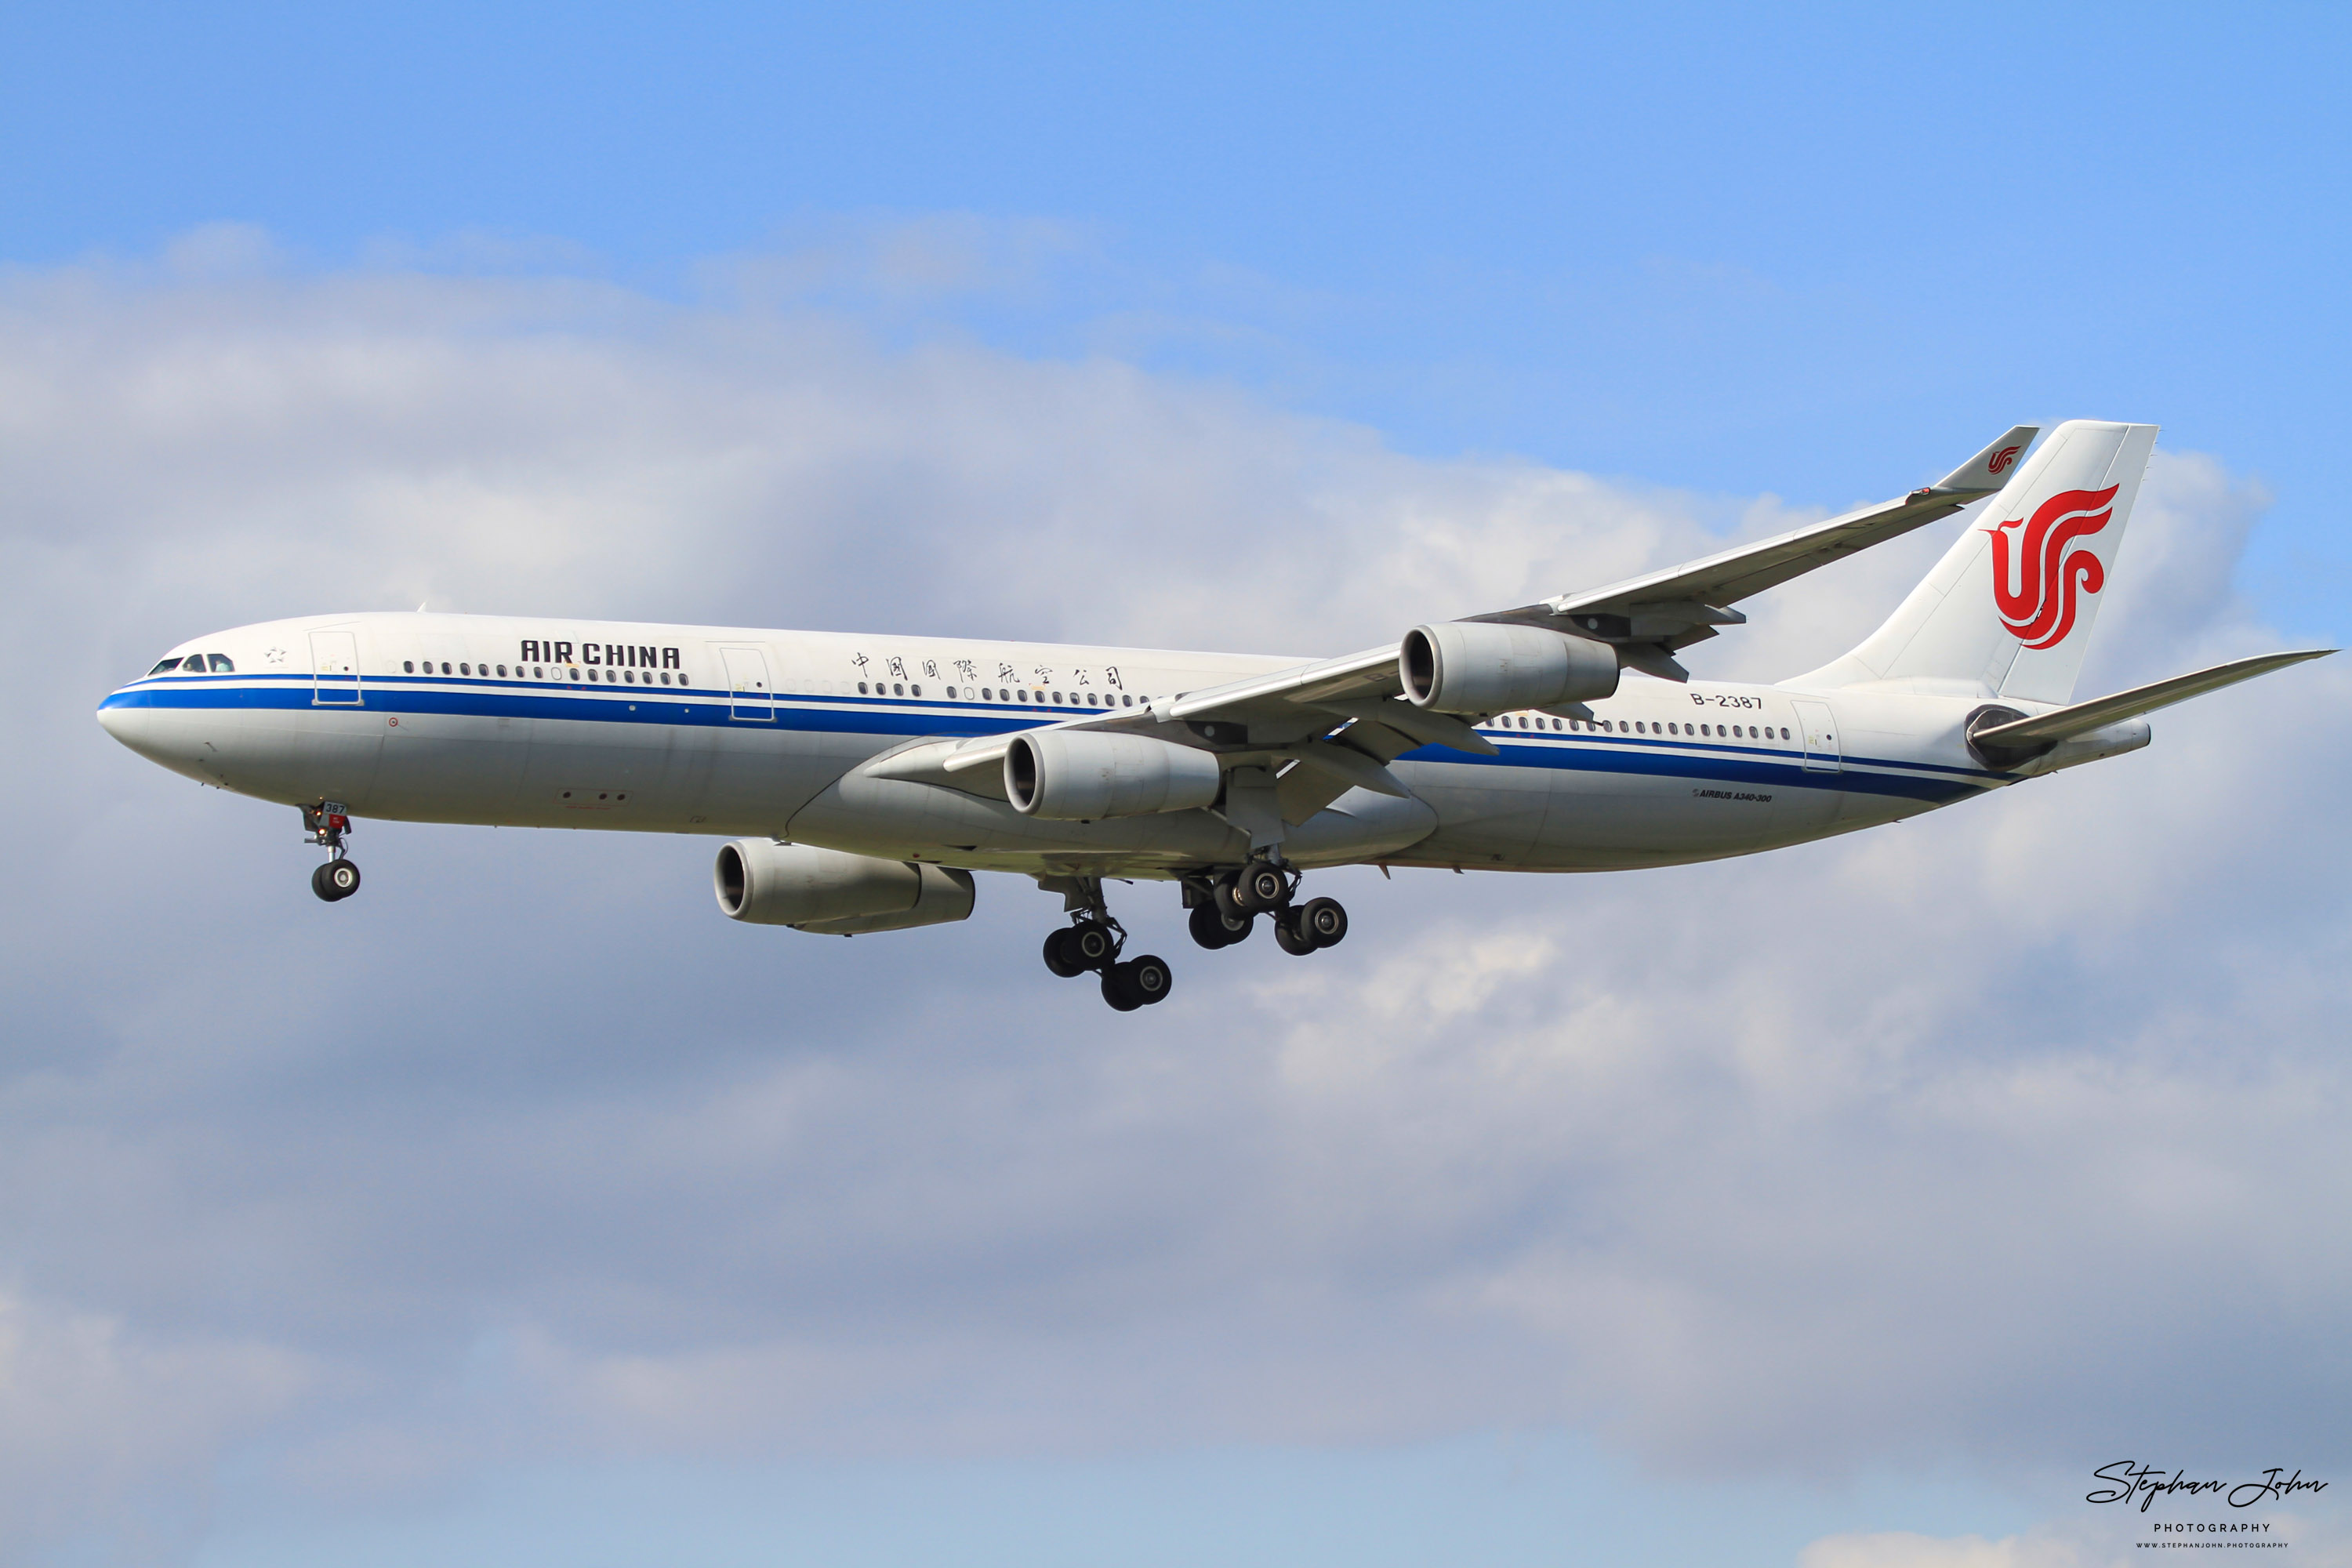 Airbus A340-313X (A343) der Air China. Das Flugzeug ist nicht mehr aktiv. Erstflug war im Oktober 1997.